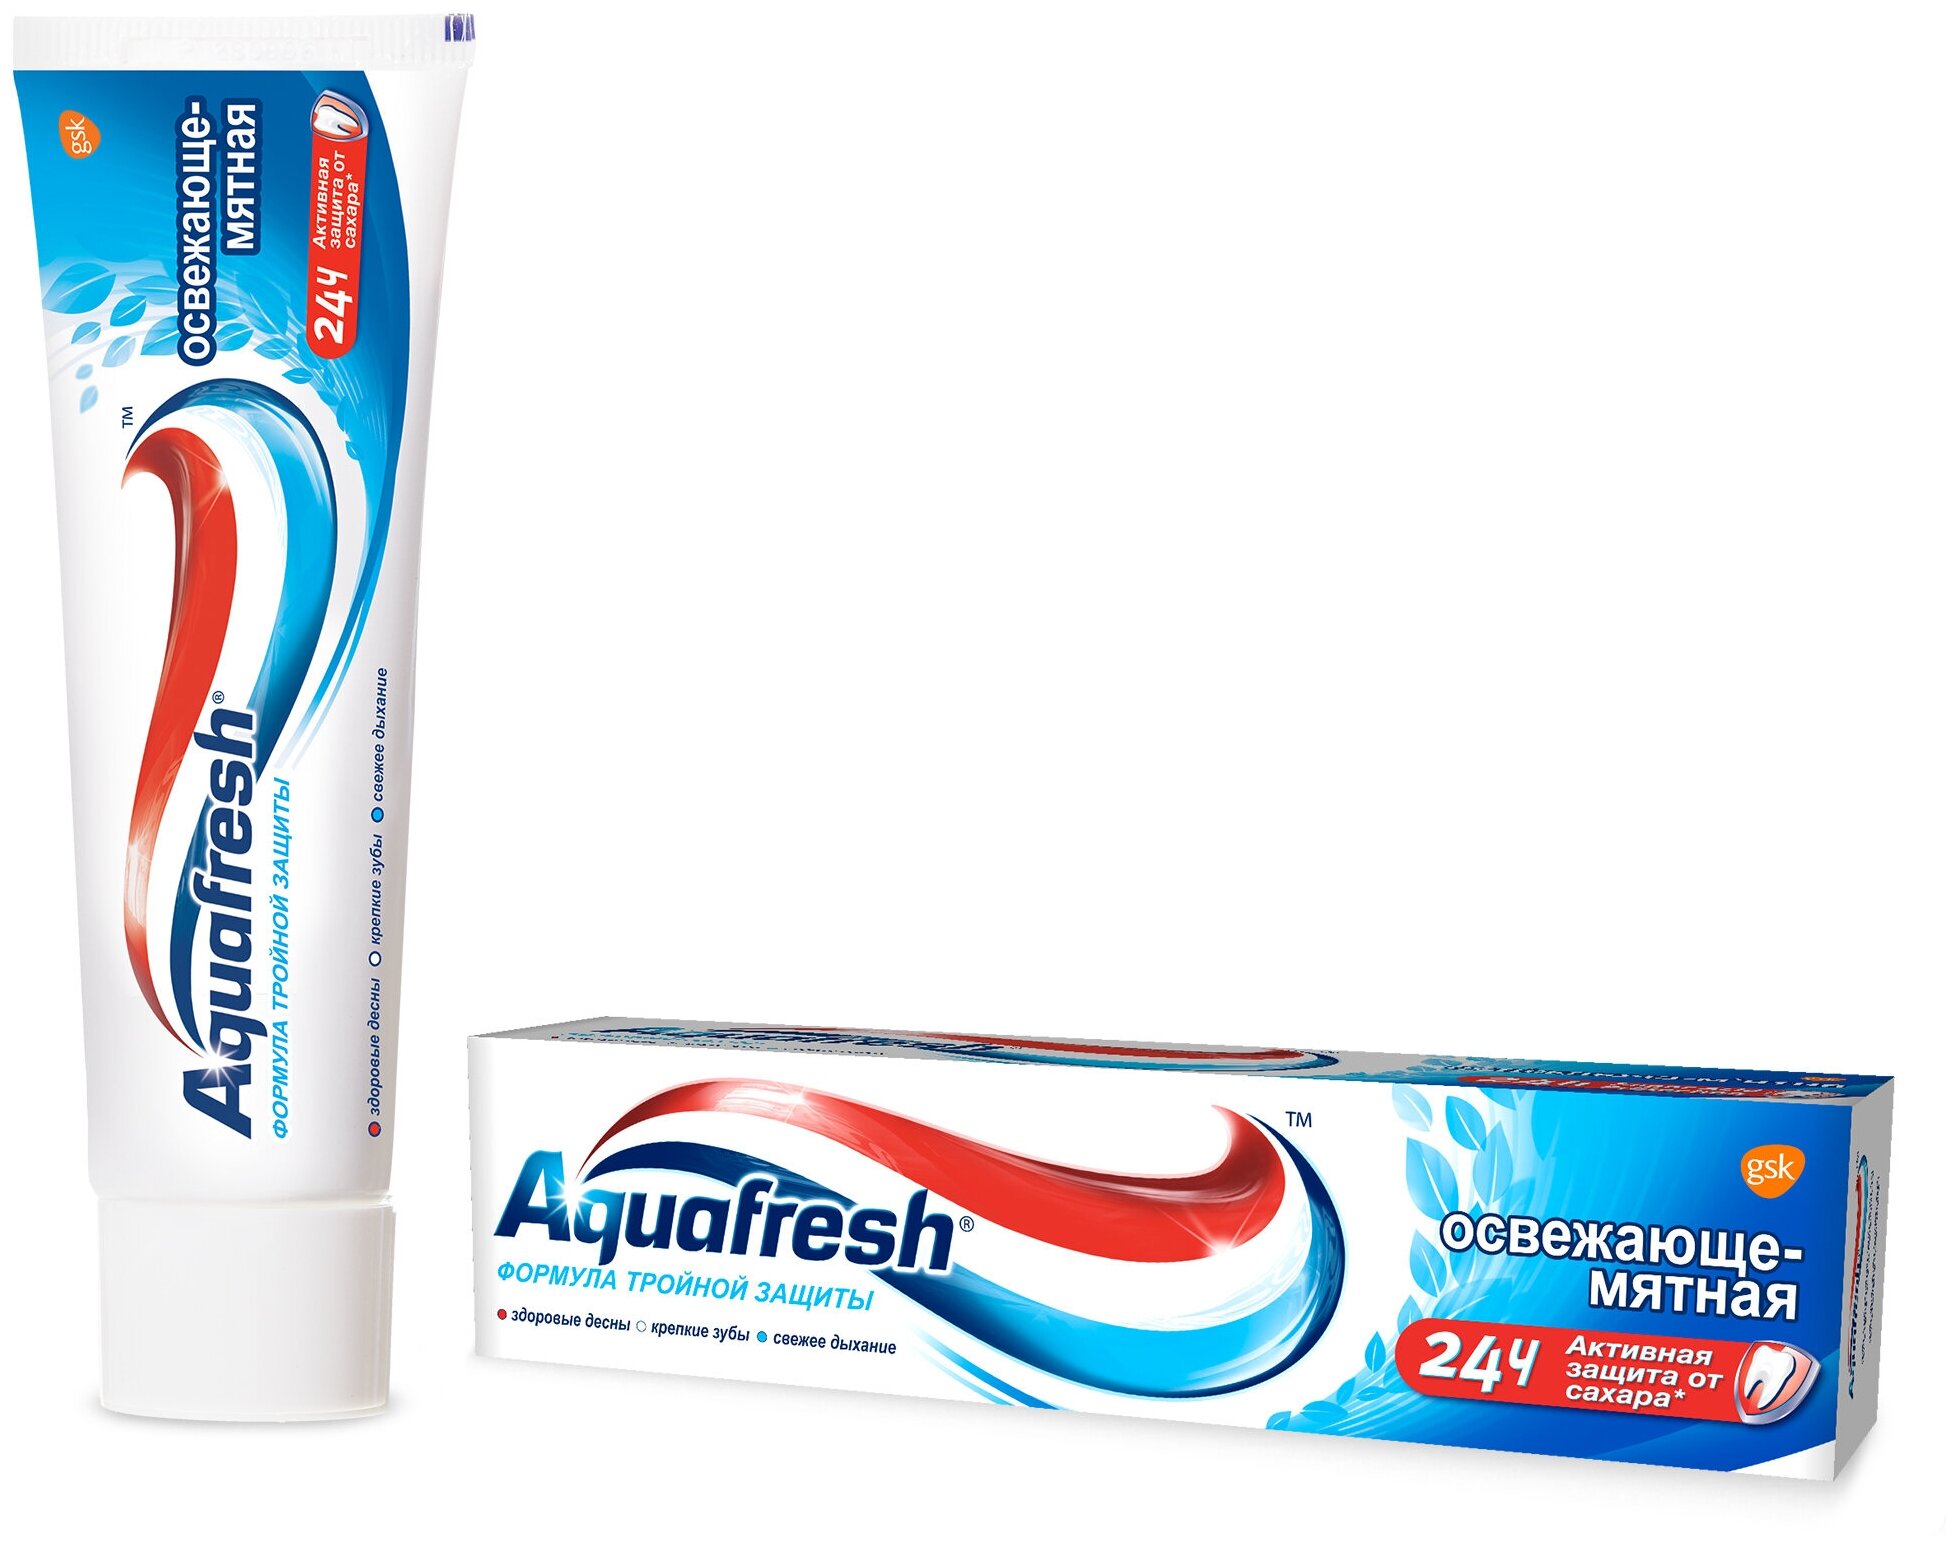 Зубная паста Aquafresh Тройная защита Освежающе-мятная